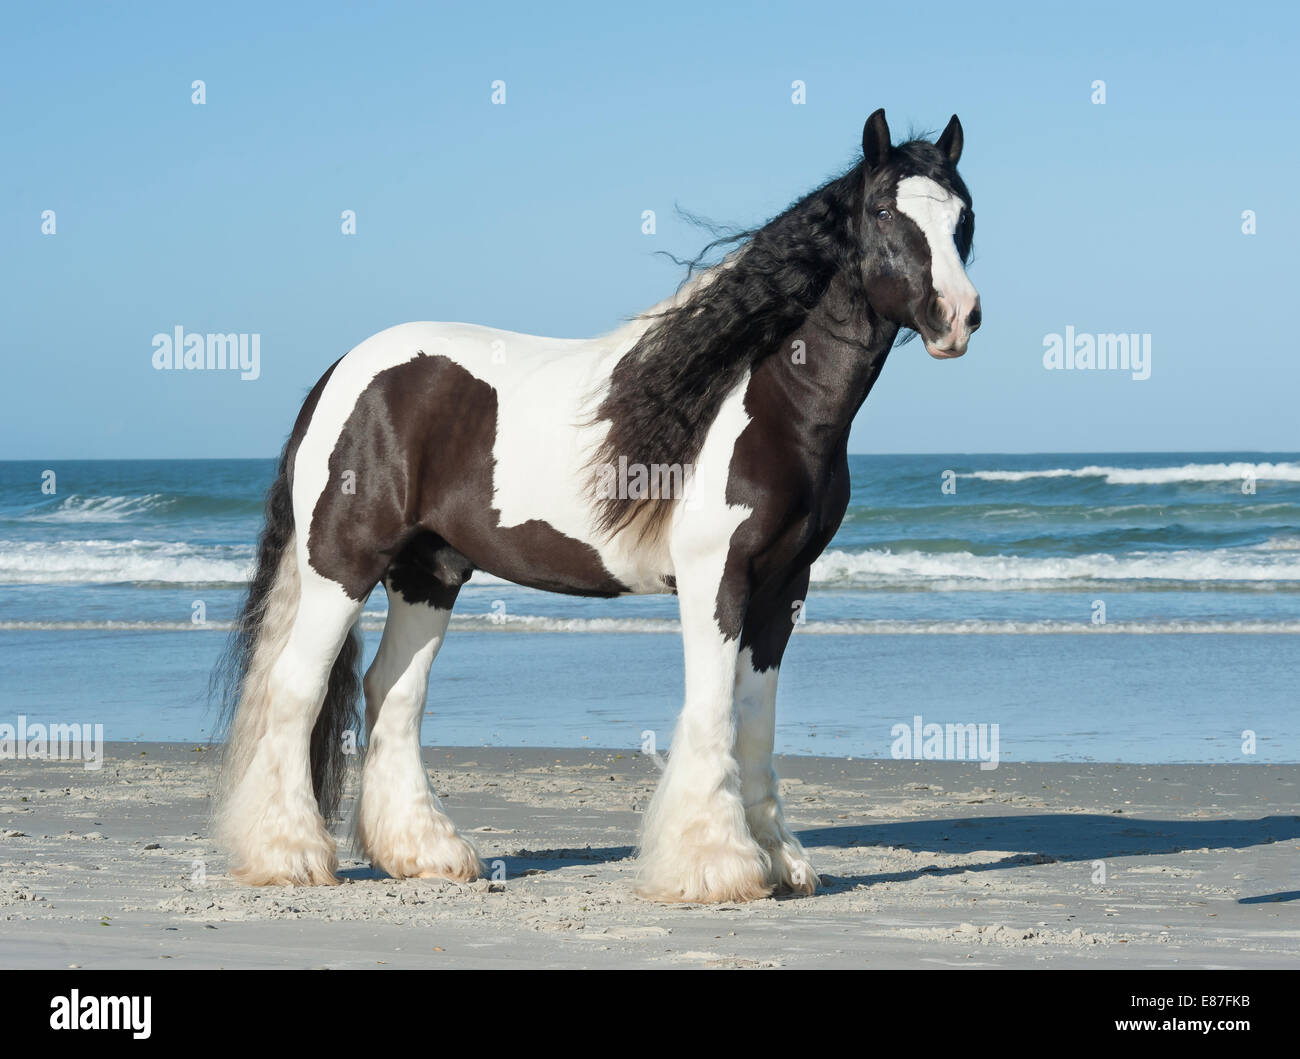 Gelding Gypsy Vanner Horse on ocean shore Stock Photo